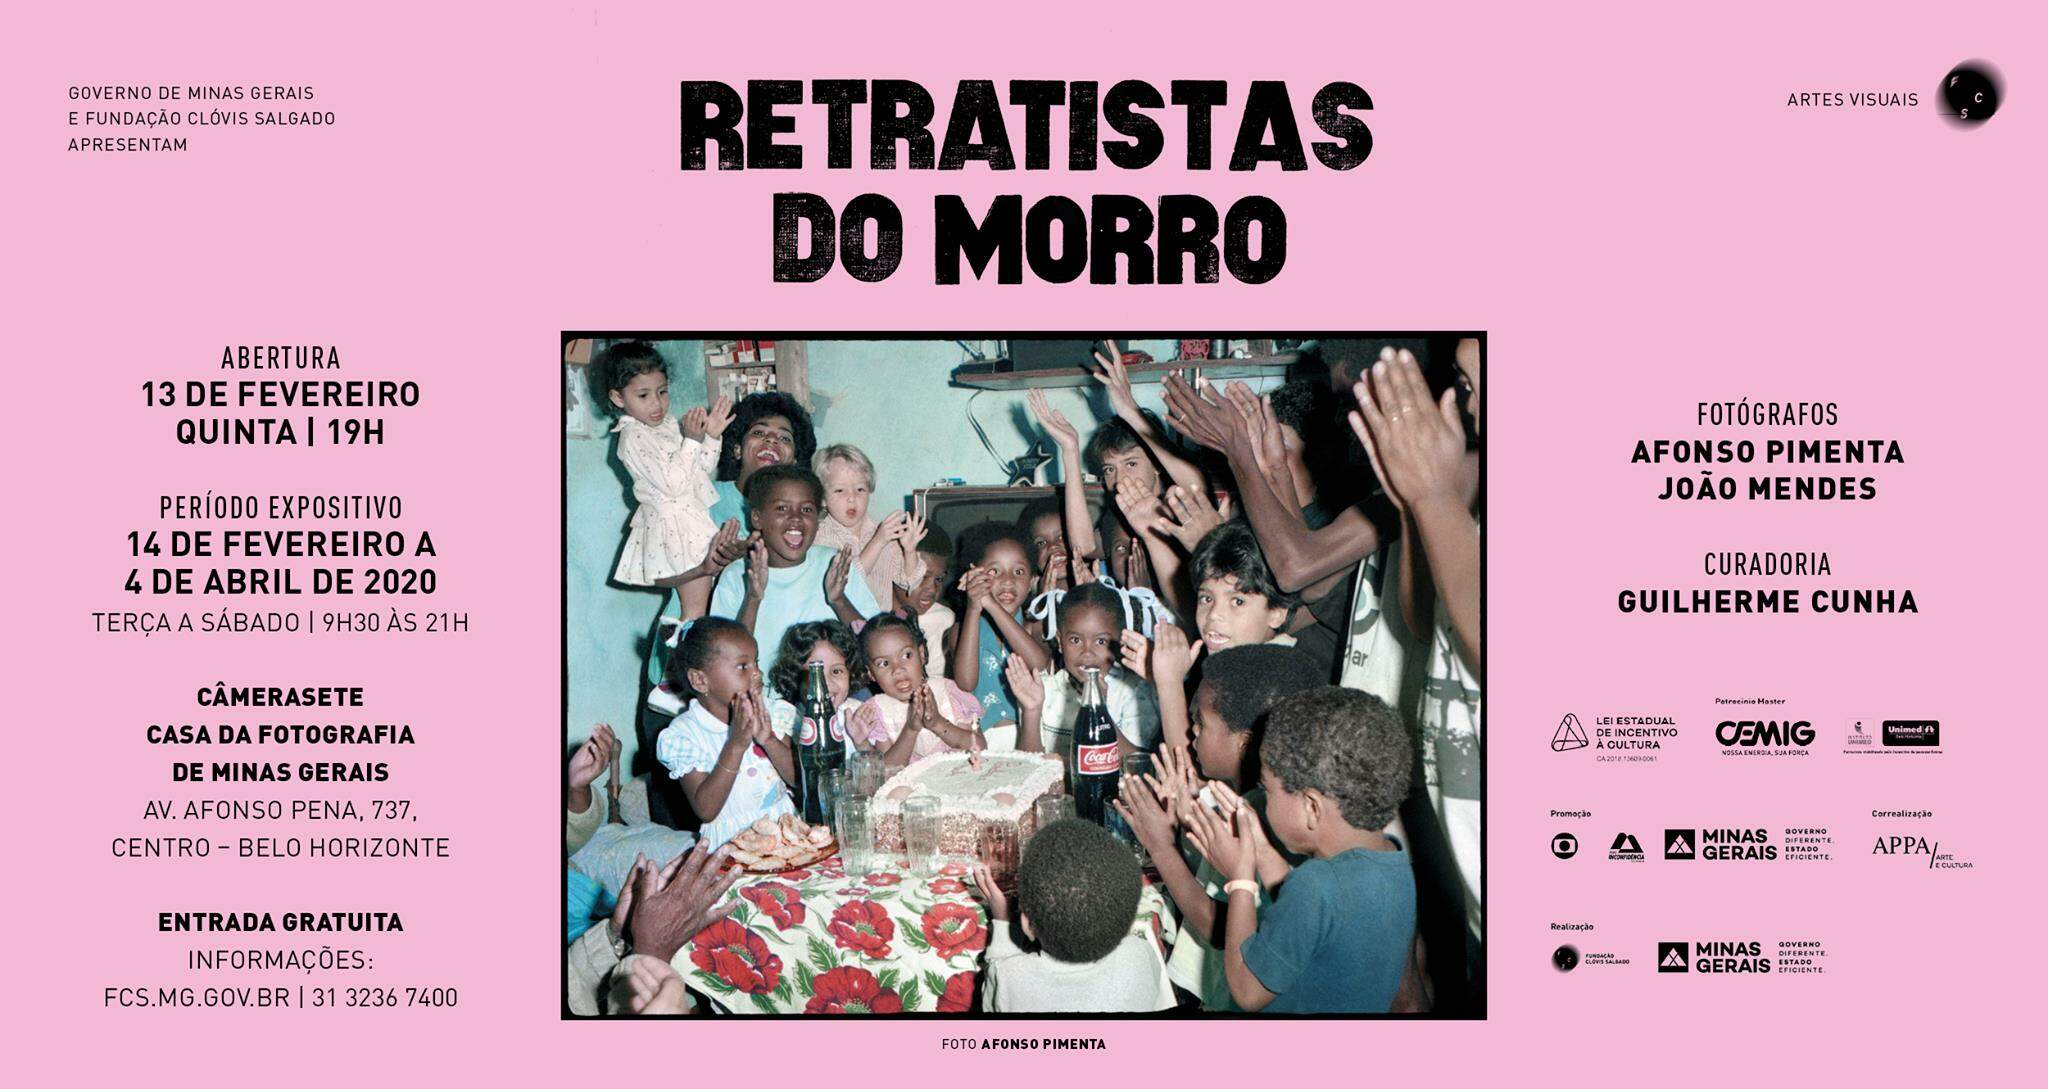 Exposição Retratistas do Morro - por João Mendes e Afonso Pimenta